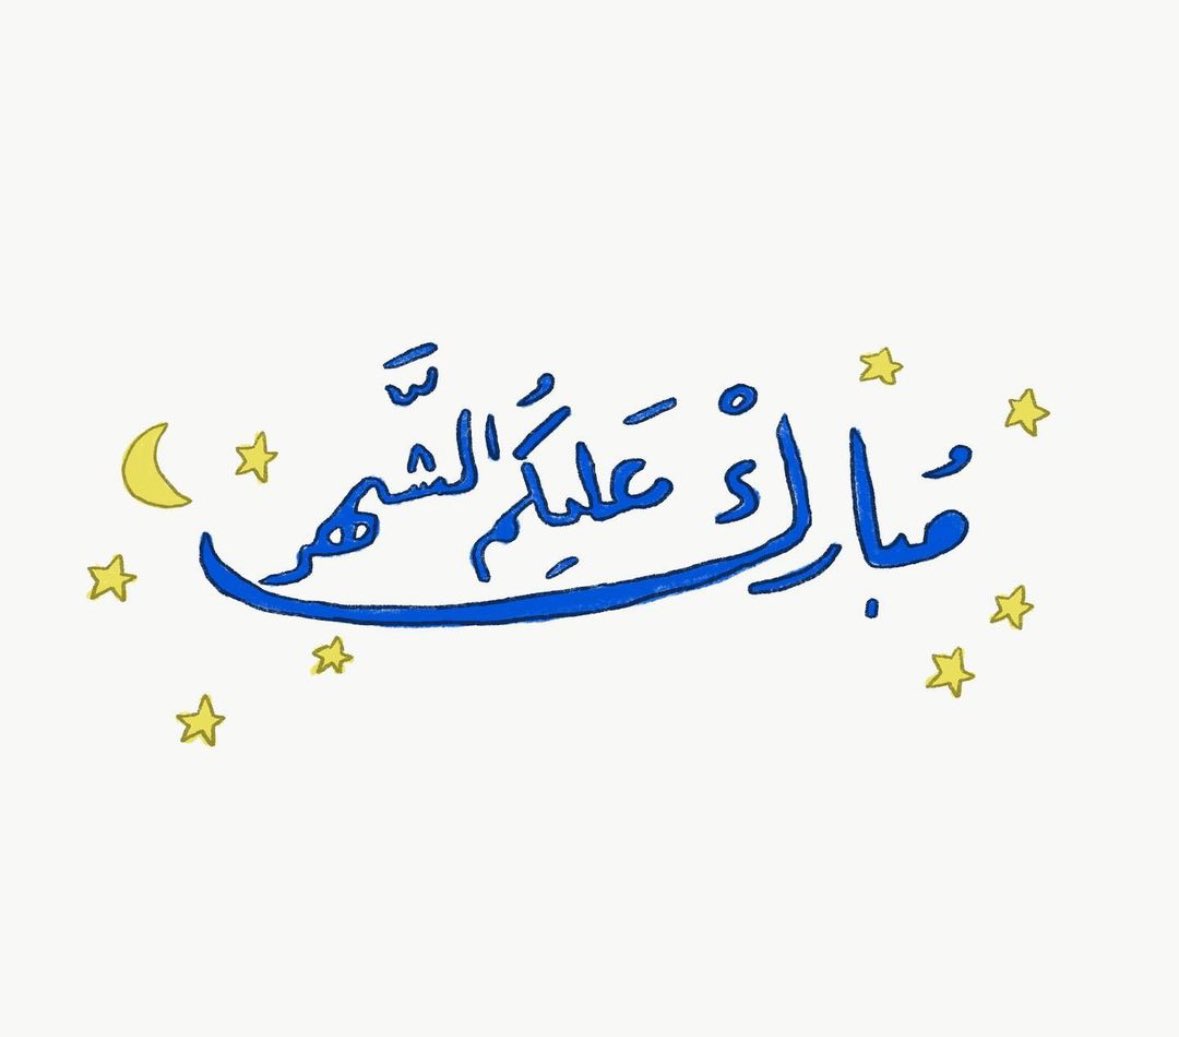 كل عام وأنتم بخير بمناسبة حلول شهر رمضان المبارك.. تقبل الله صيامكم، ودعاءكم. Wishing you Ramadan Mubarak. May the Almighty accept your fast and all good deeds.